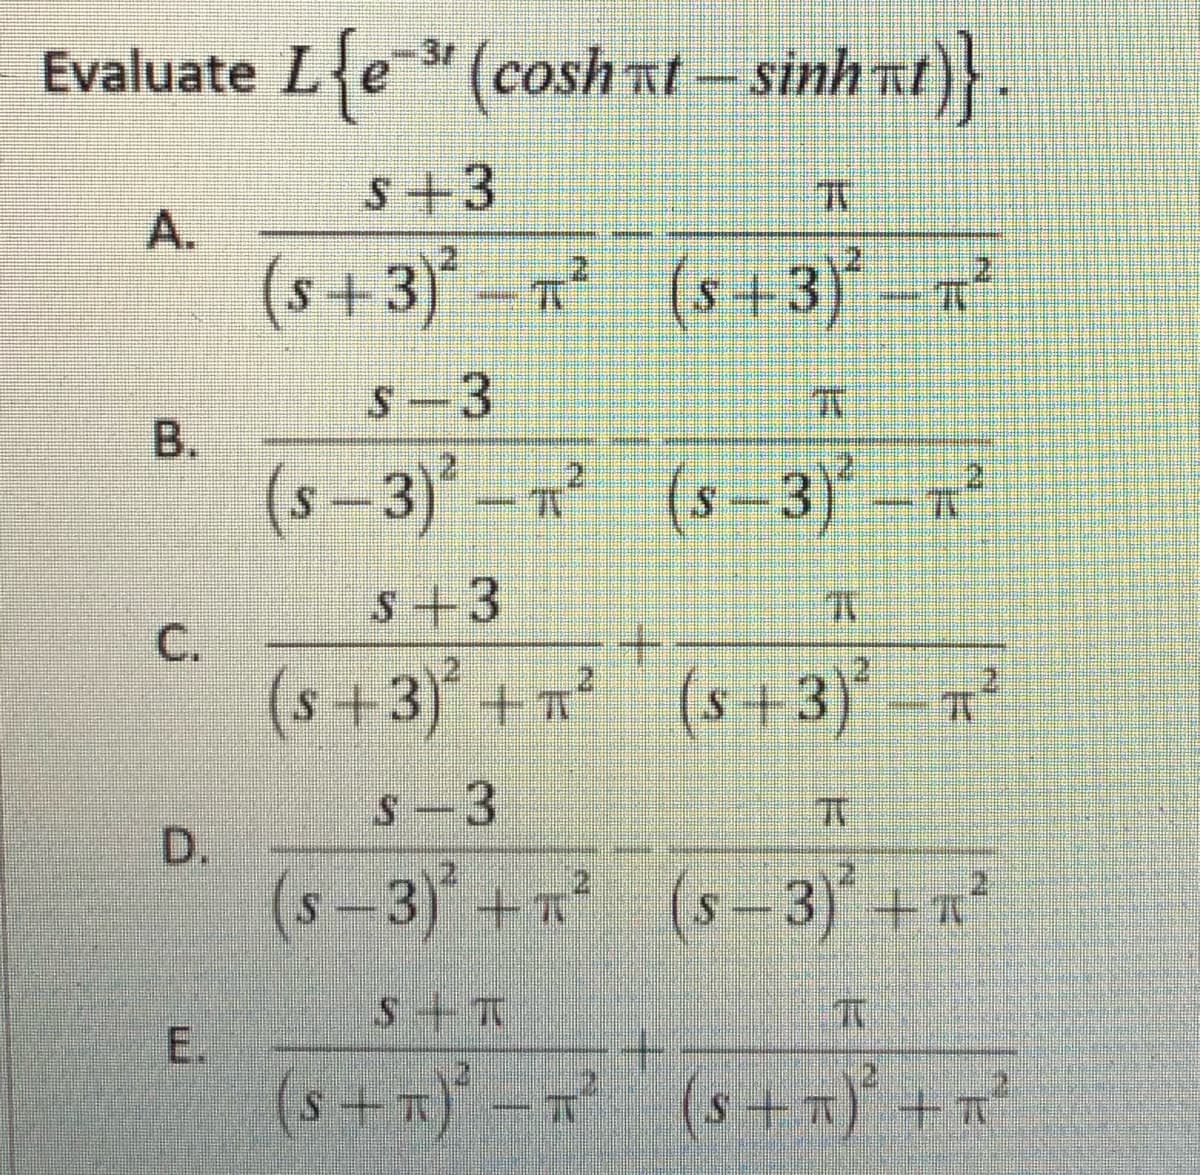 Evaluate Le" (cosh
nt- sinh nt)}
3r
S+3
A.
(s+3)*- (s+ 3)* -7²
2.
2
1.
S-3
(s –3)-n (s-3) -R
s+3
С.
(s+3) +n² (s+3)-?
21
S-3
D.
(s-3) + (s-3) +n
E.
(s+x) -r (s +x) +n?
B.
